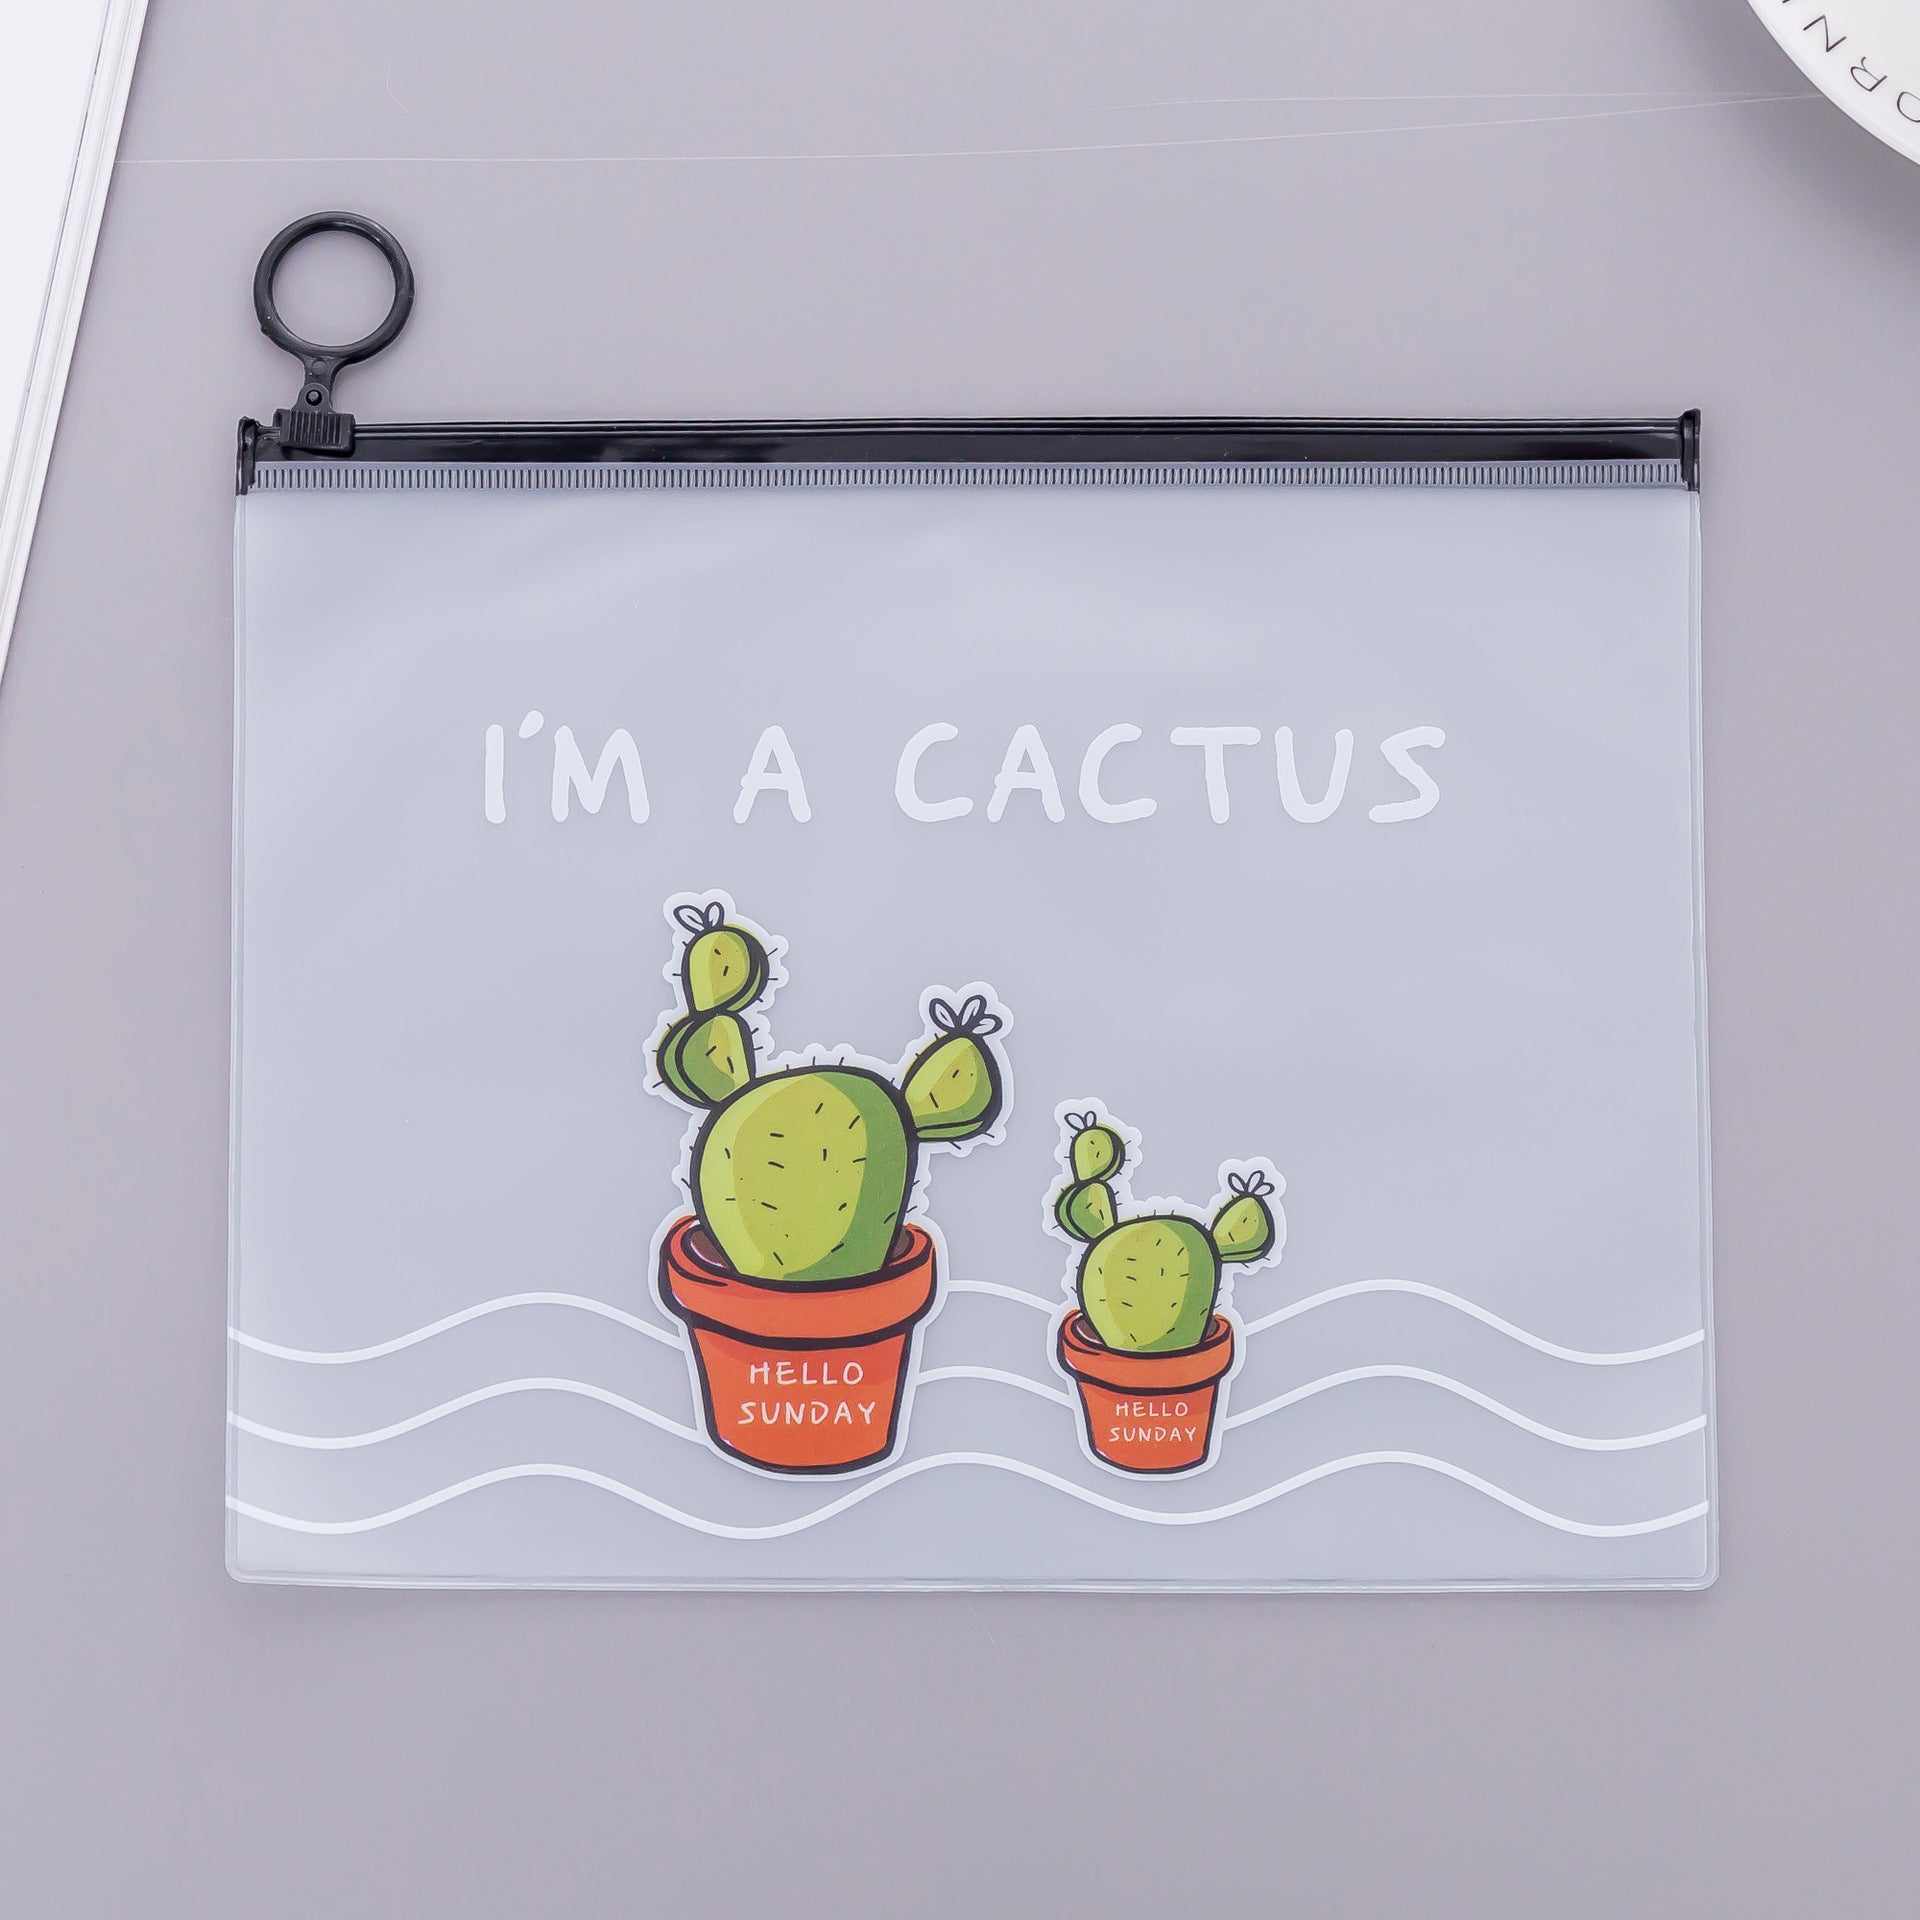 I'm a cactus